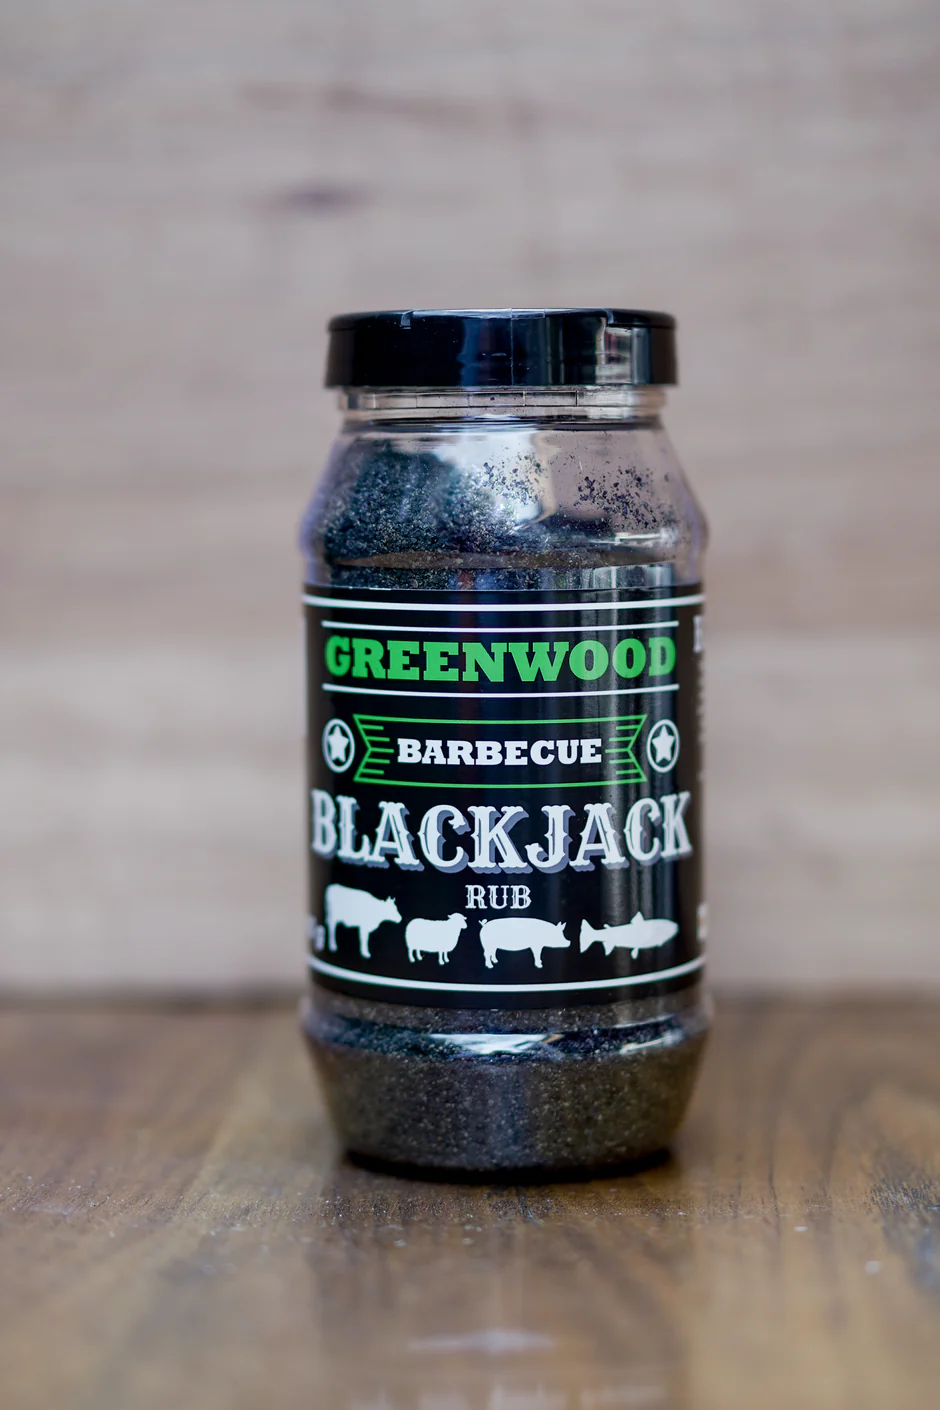 Greenwood Barbecue Blackjack Rub